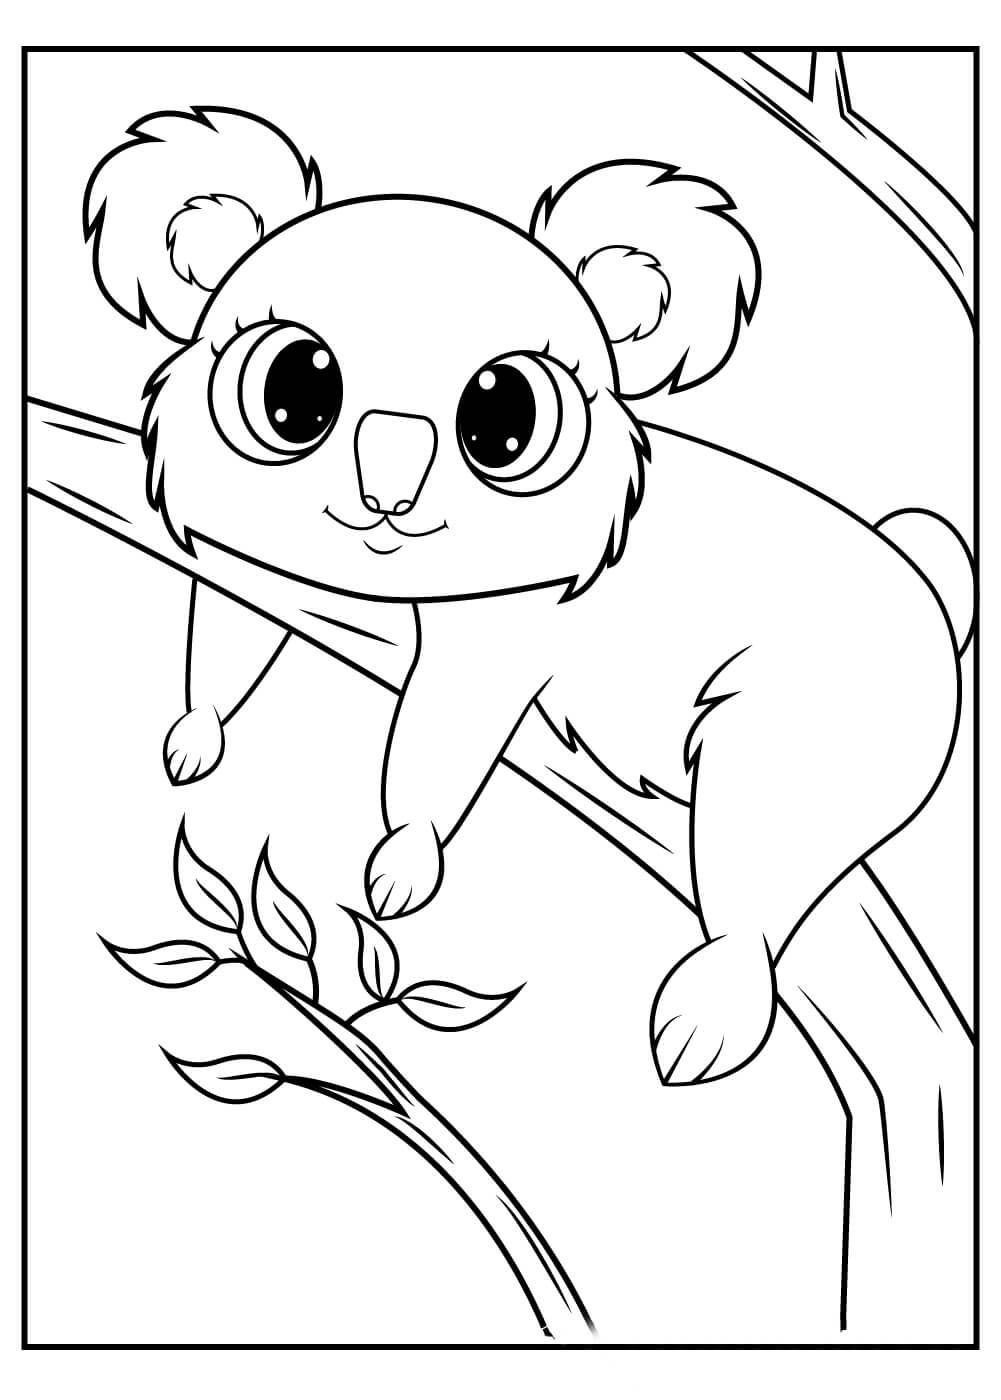 Dibujos de Bonito Koala para colorear